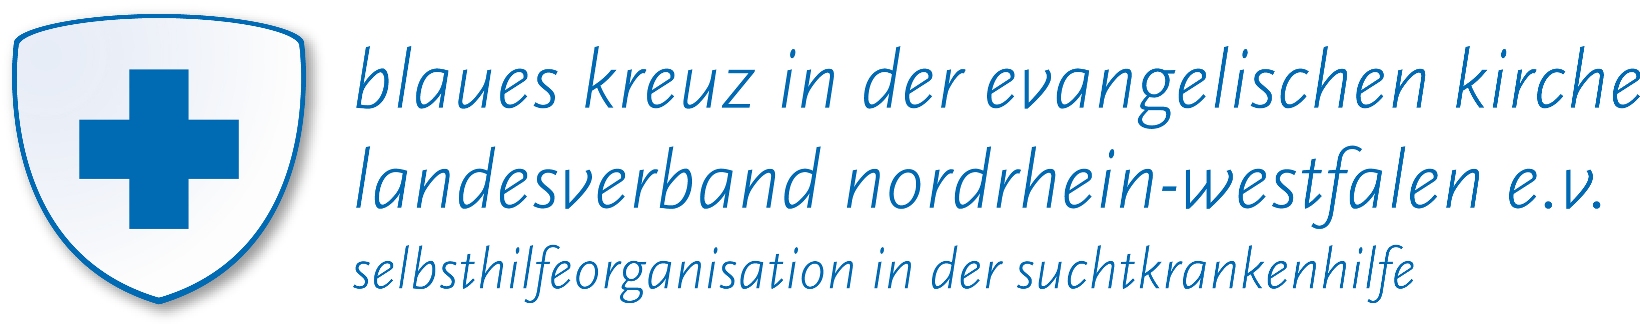 logo_bke_lang_links_nordrhein-westfpfad_rgb